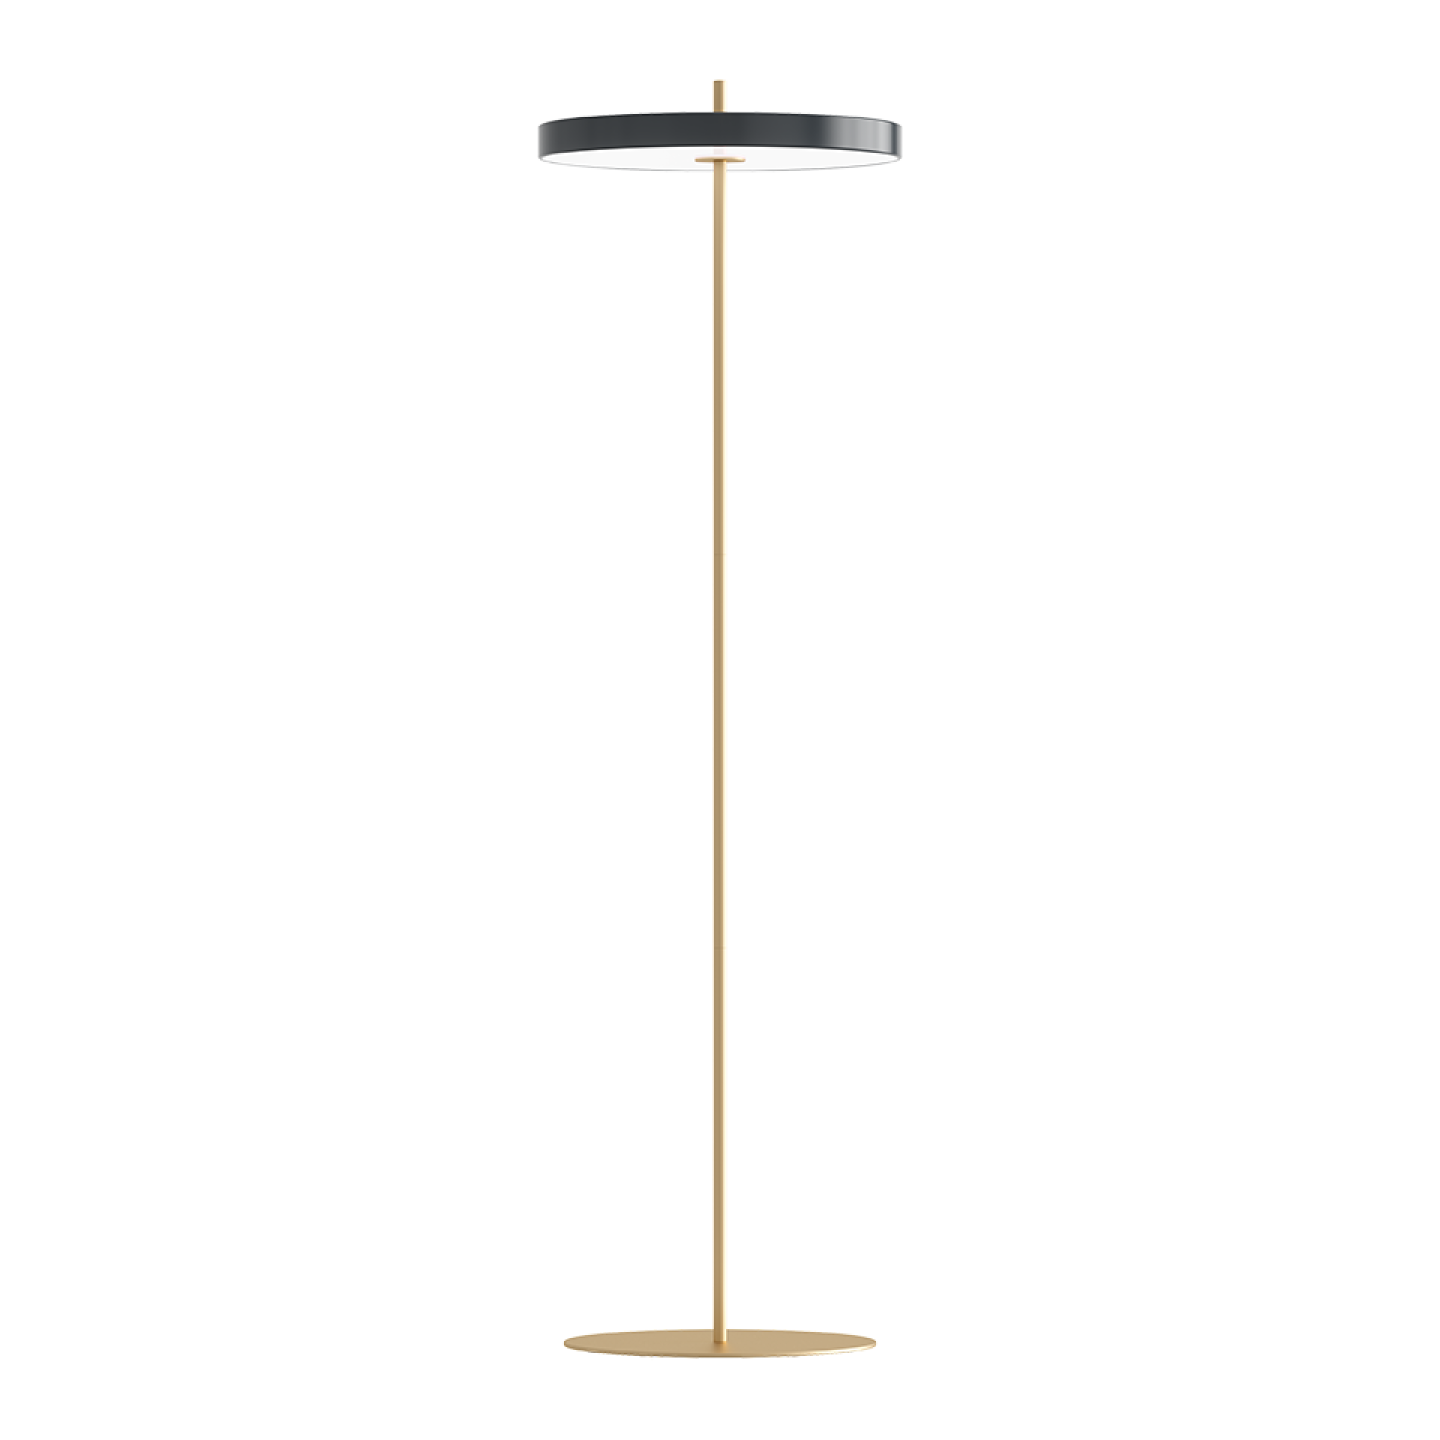 THE ASTERIA FLOOR LAMP